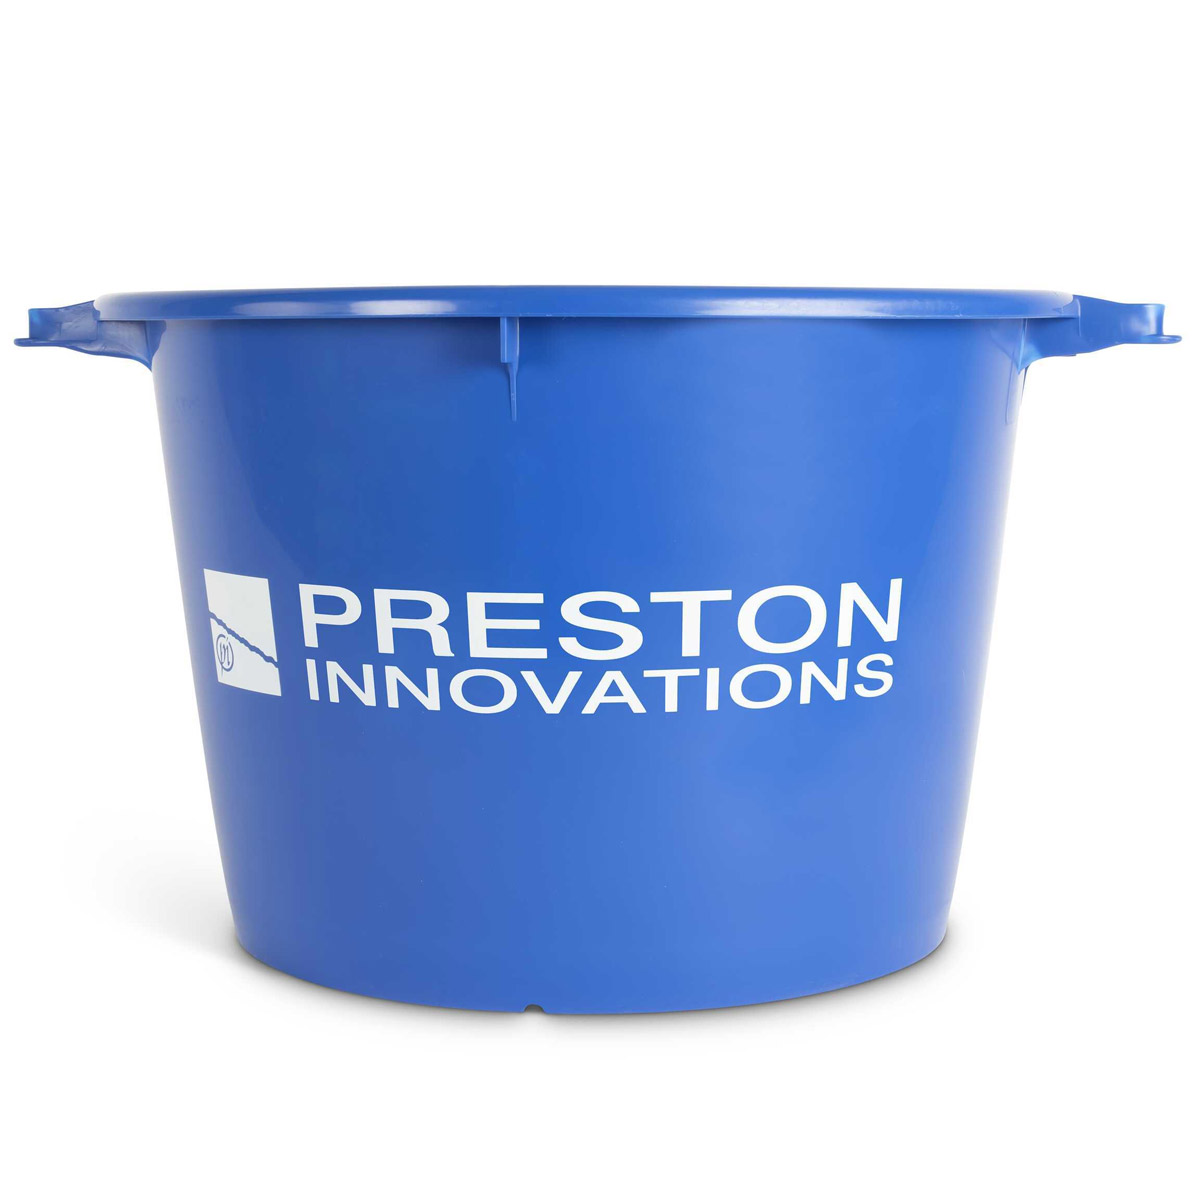 Preston Innovations Bucket 40 Liter